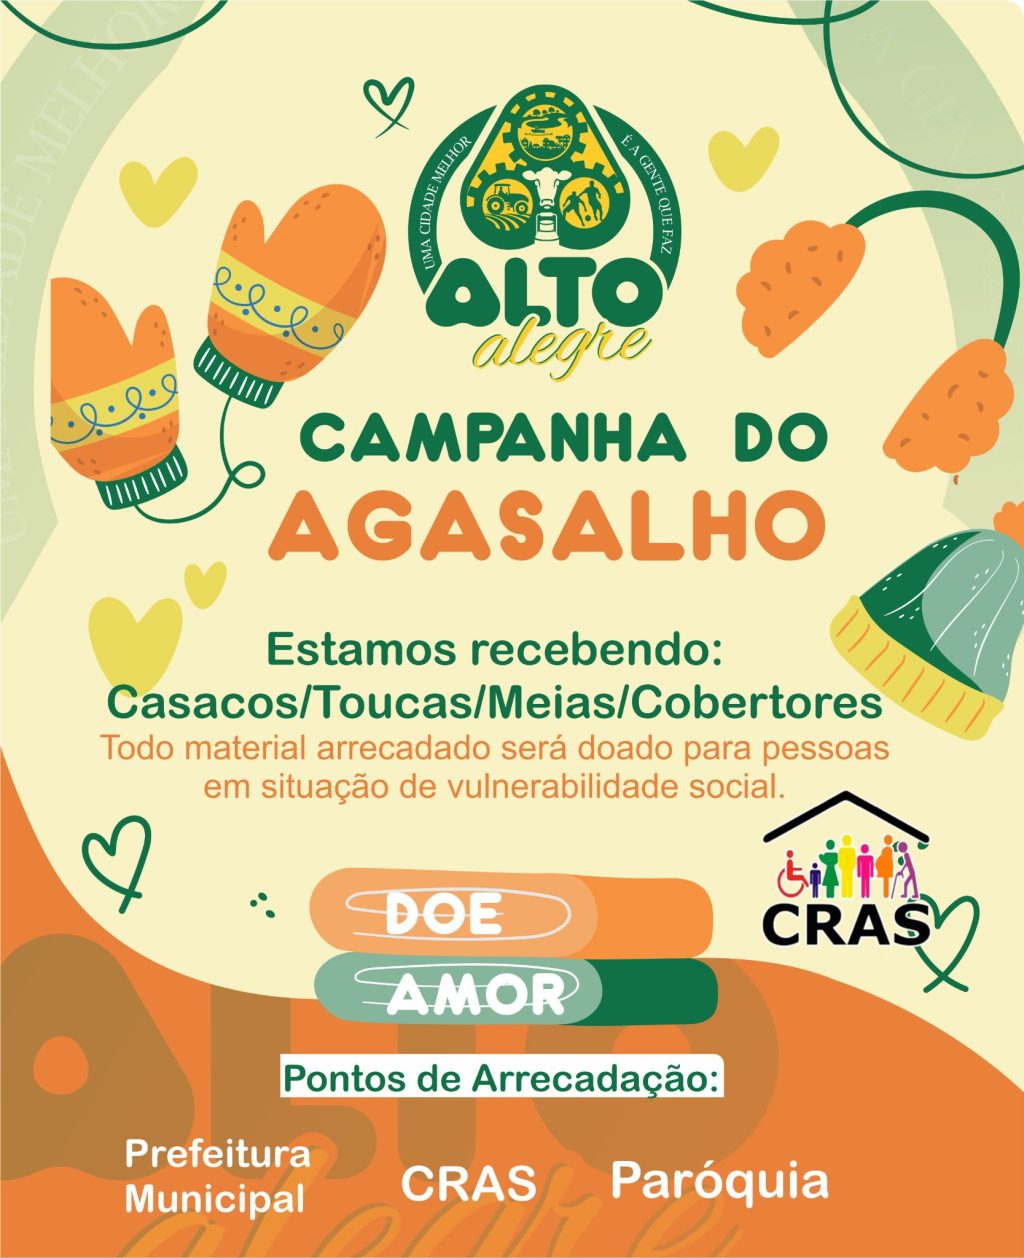 Alto Alegre iniciou a campanha do agasalho 2022